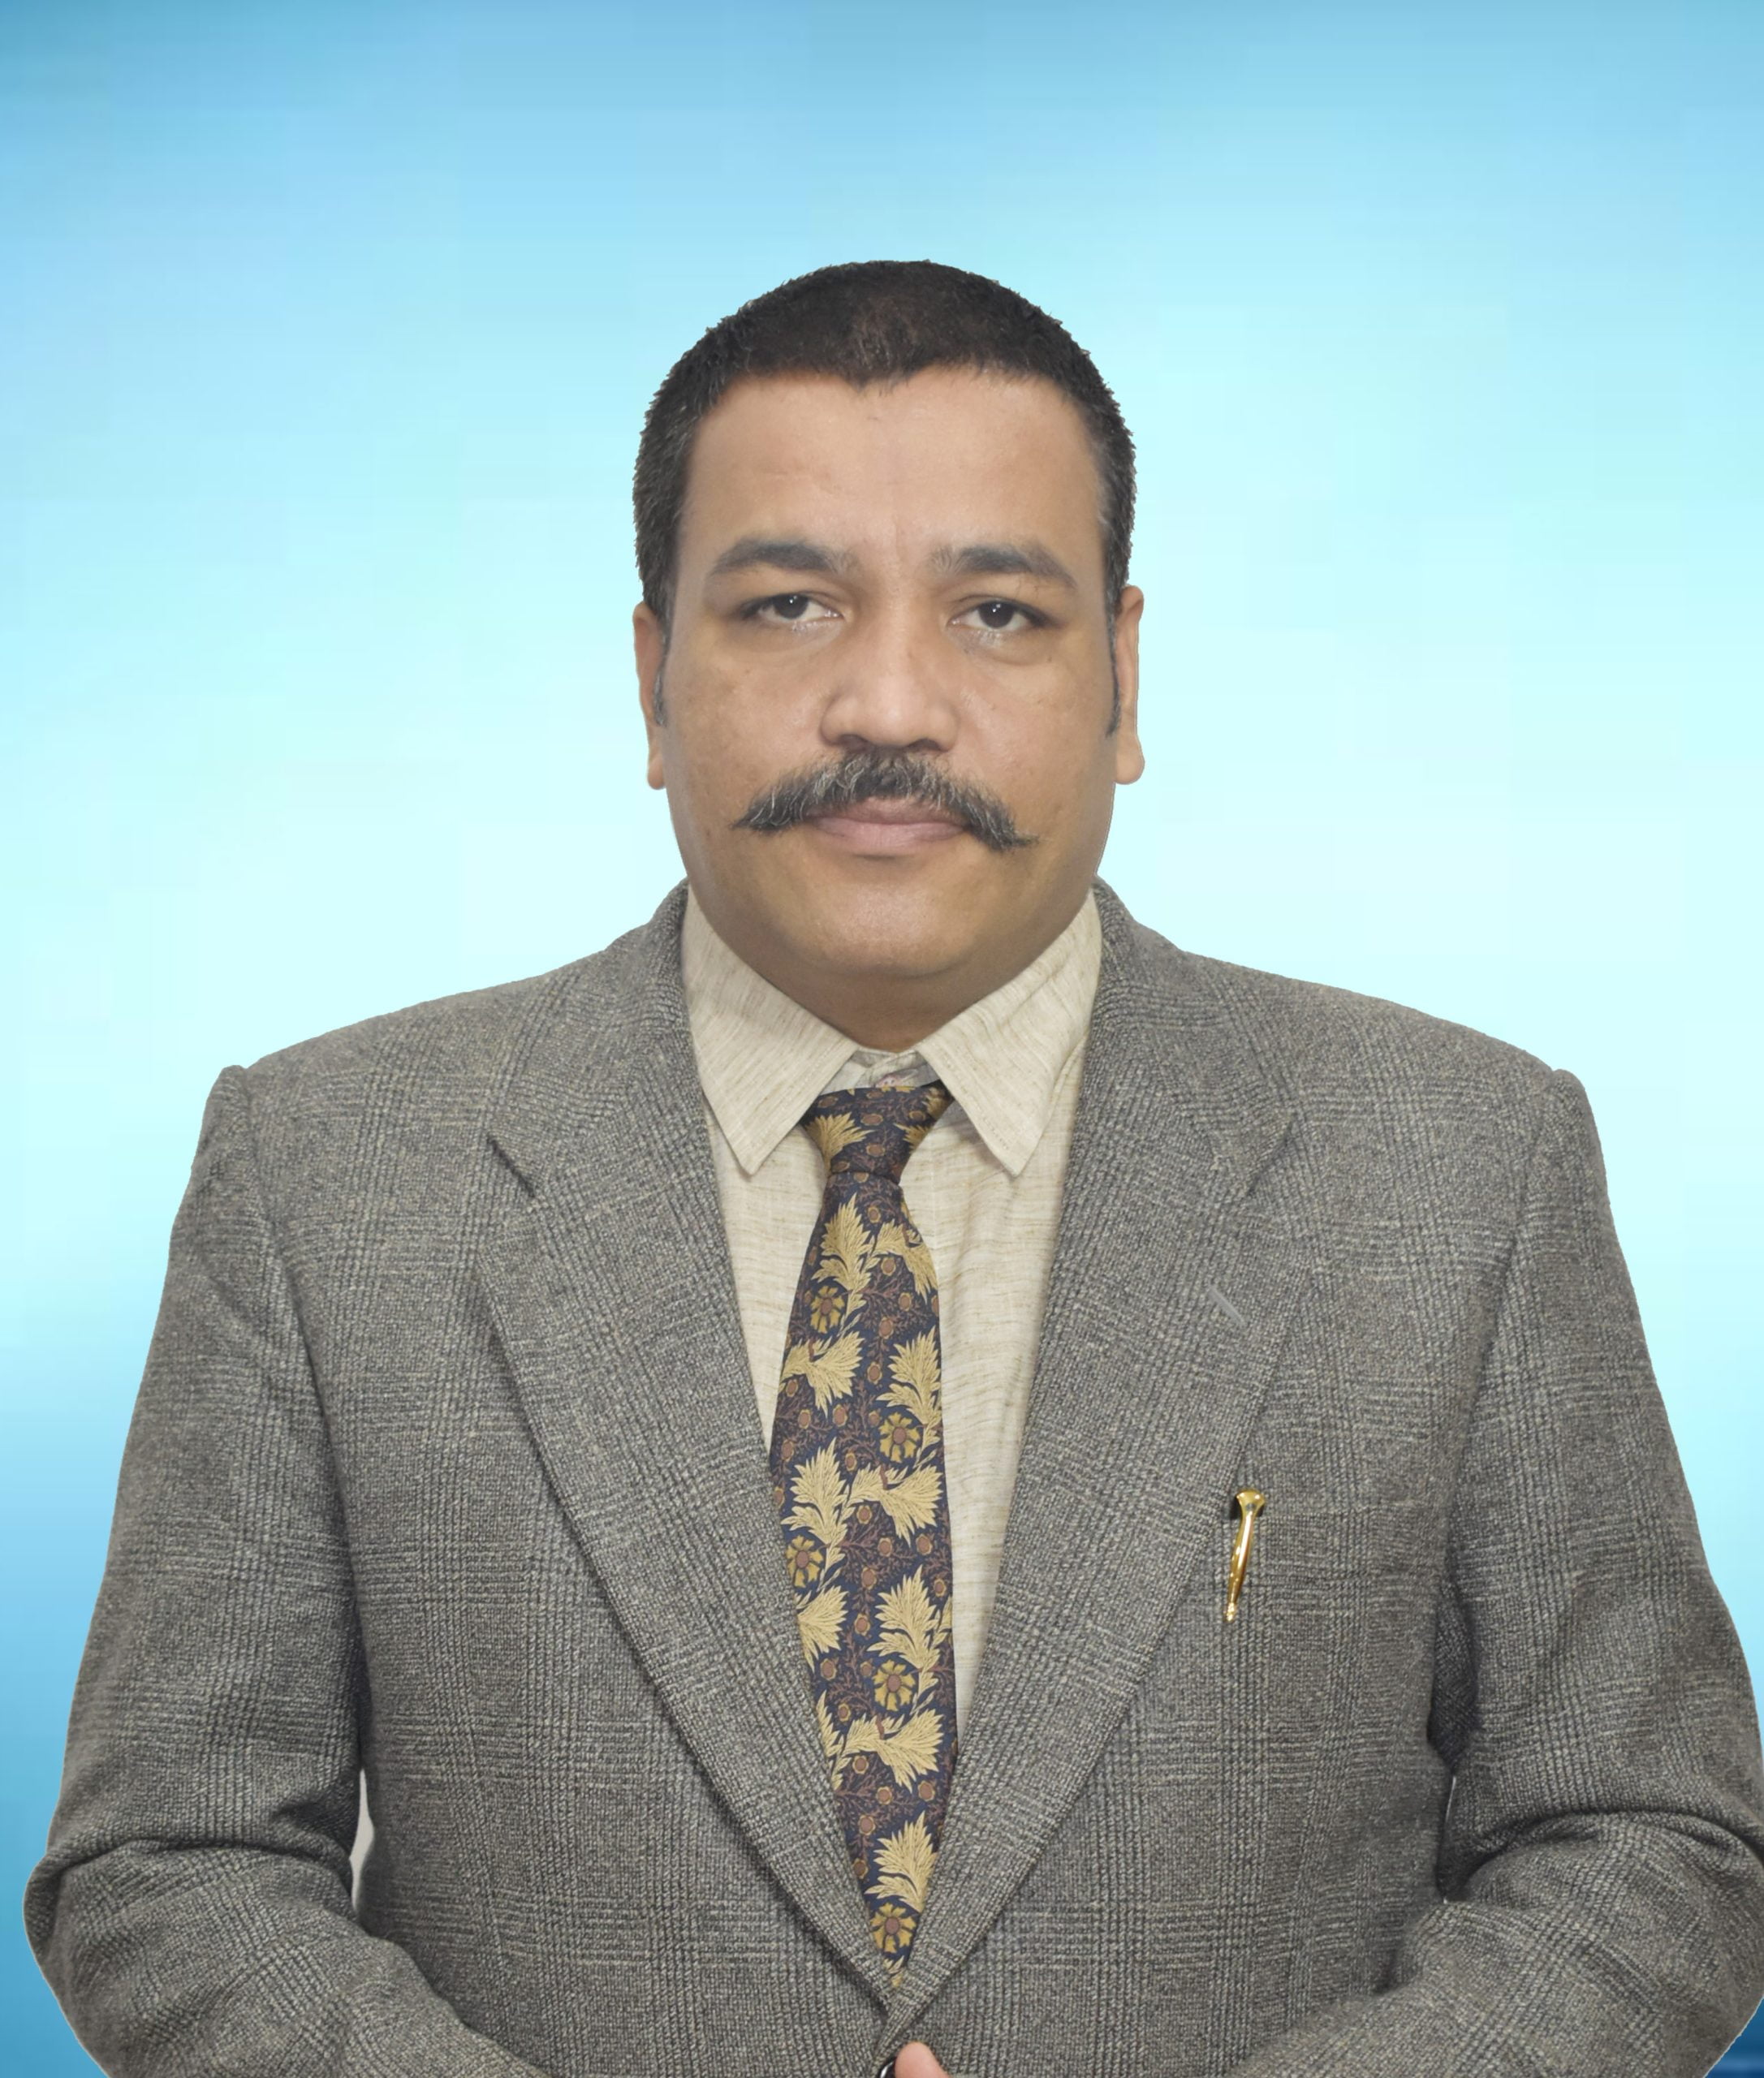 Dr. Lokeshvar Singh Jodhana